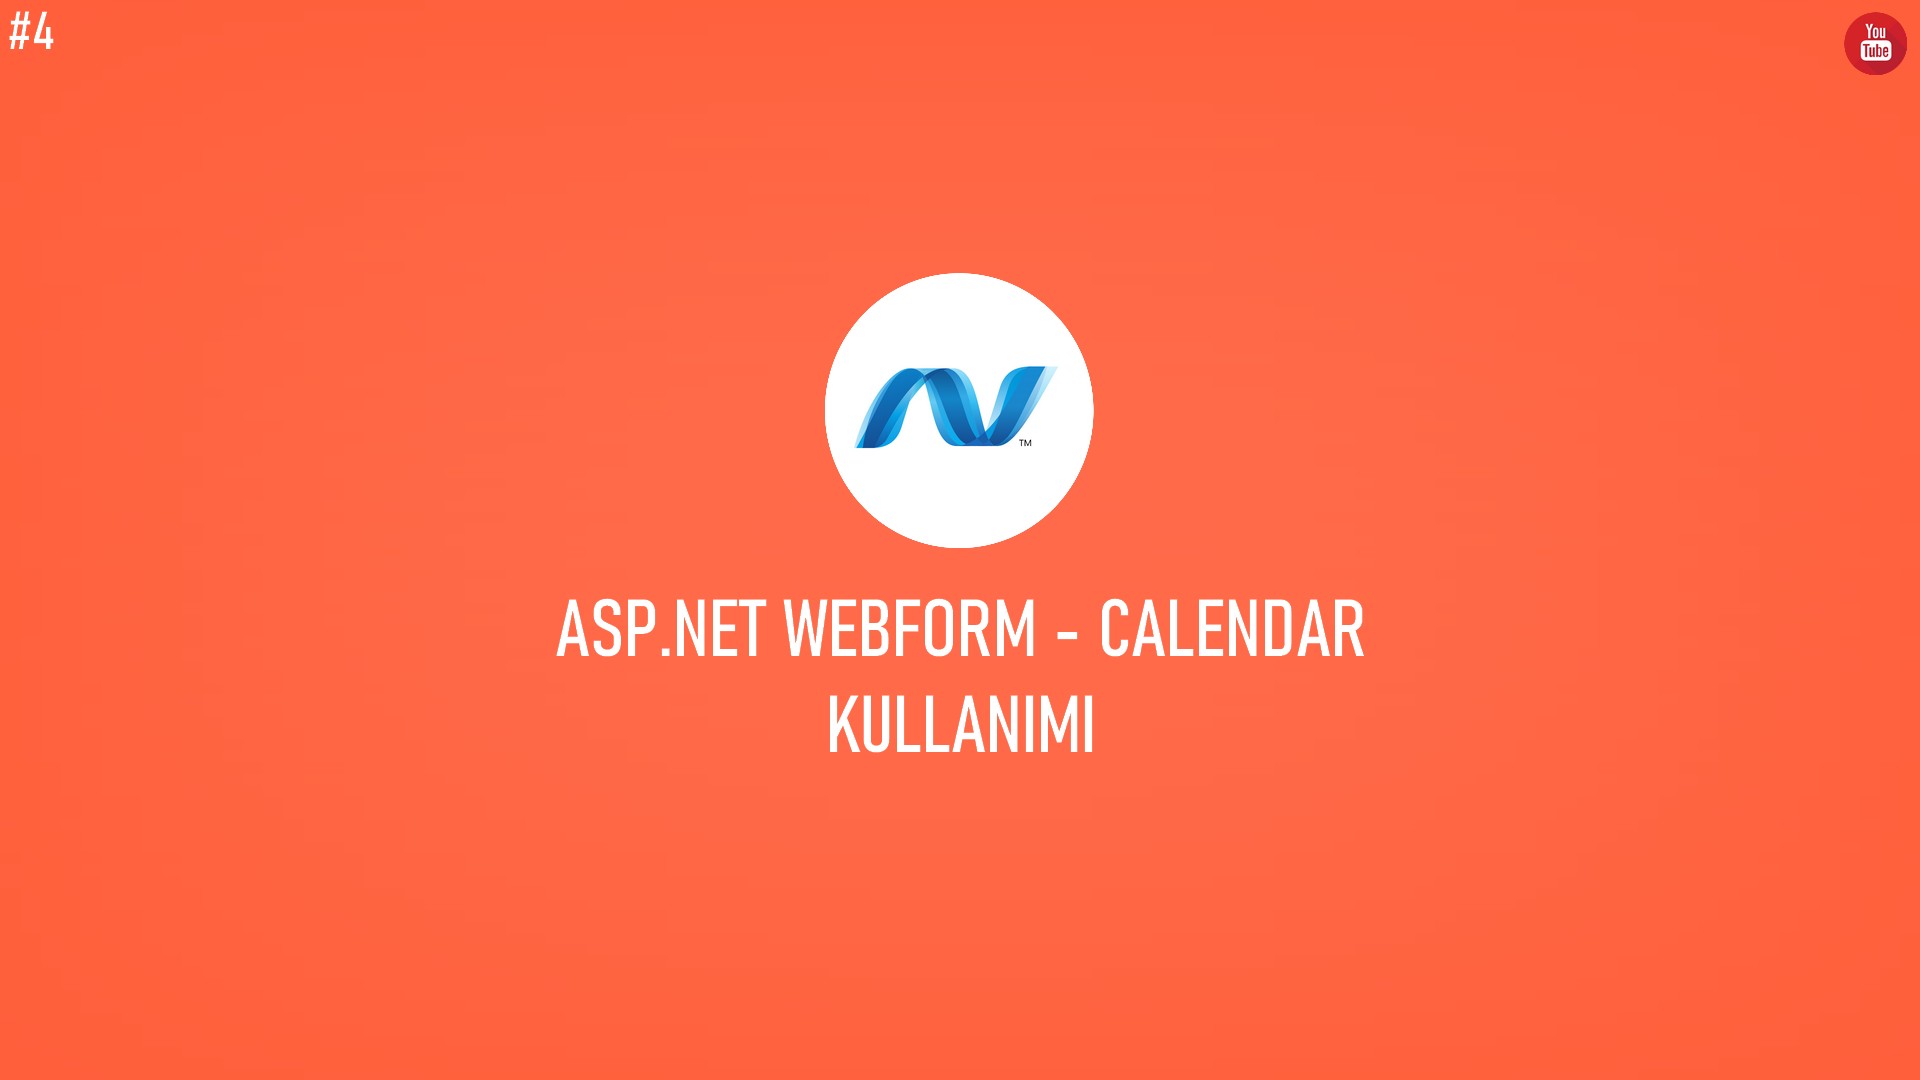 C# ASP.NET WebForm - Calendar Kullanımı başlıklı içeriğin kapak resmi.